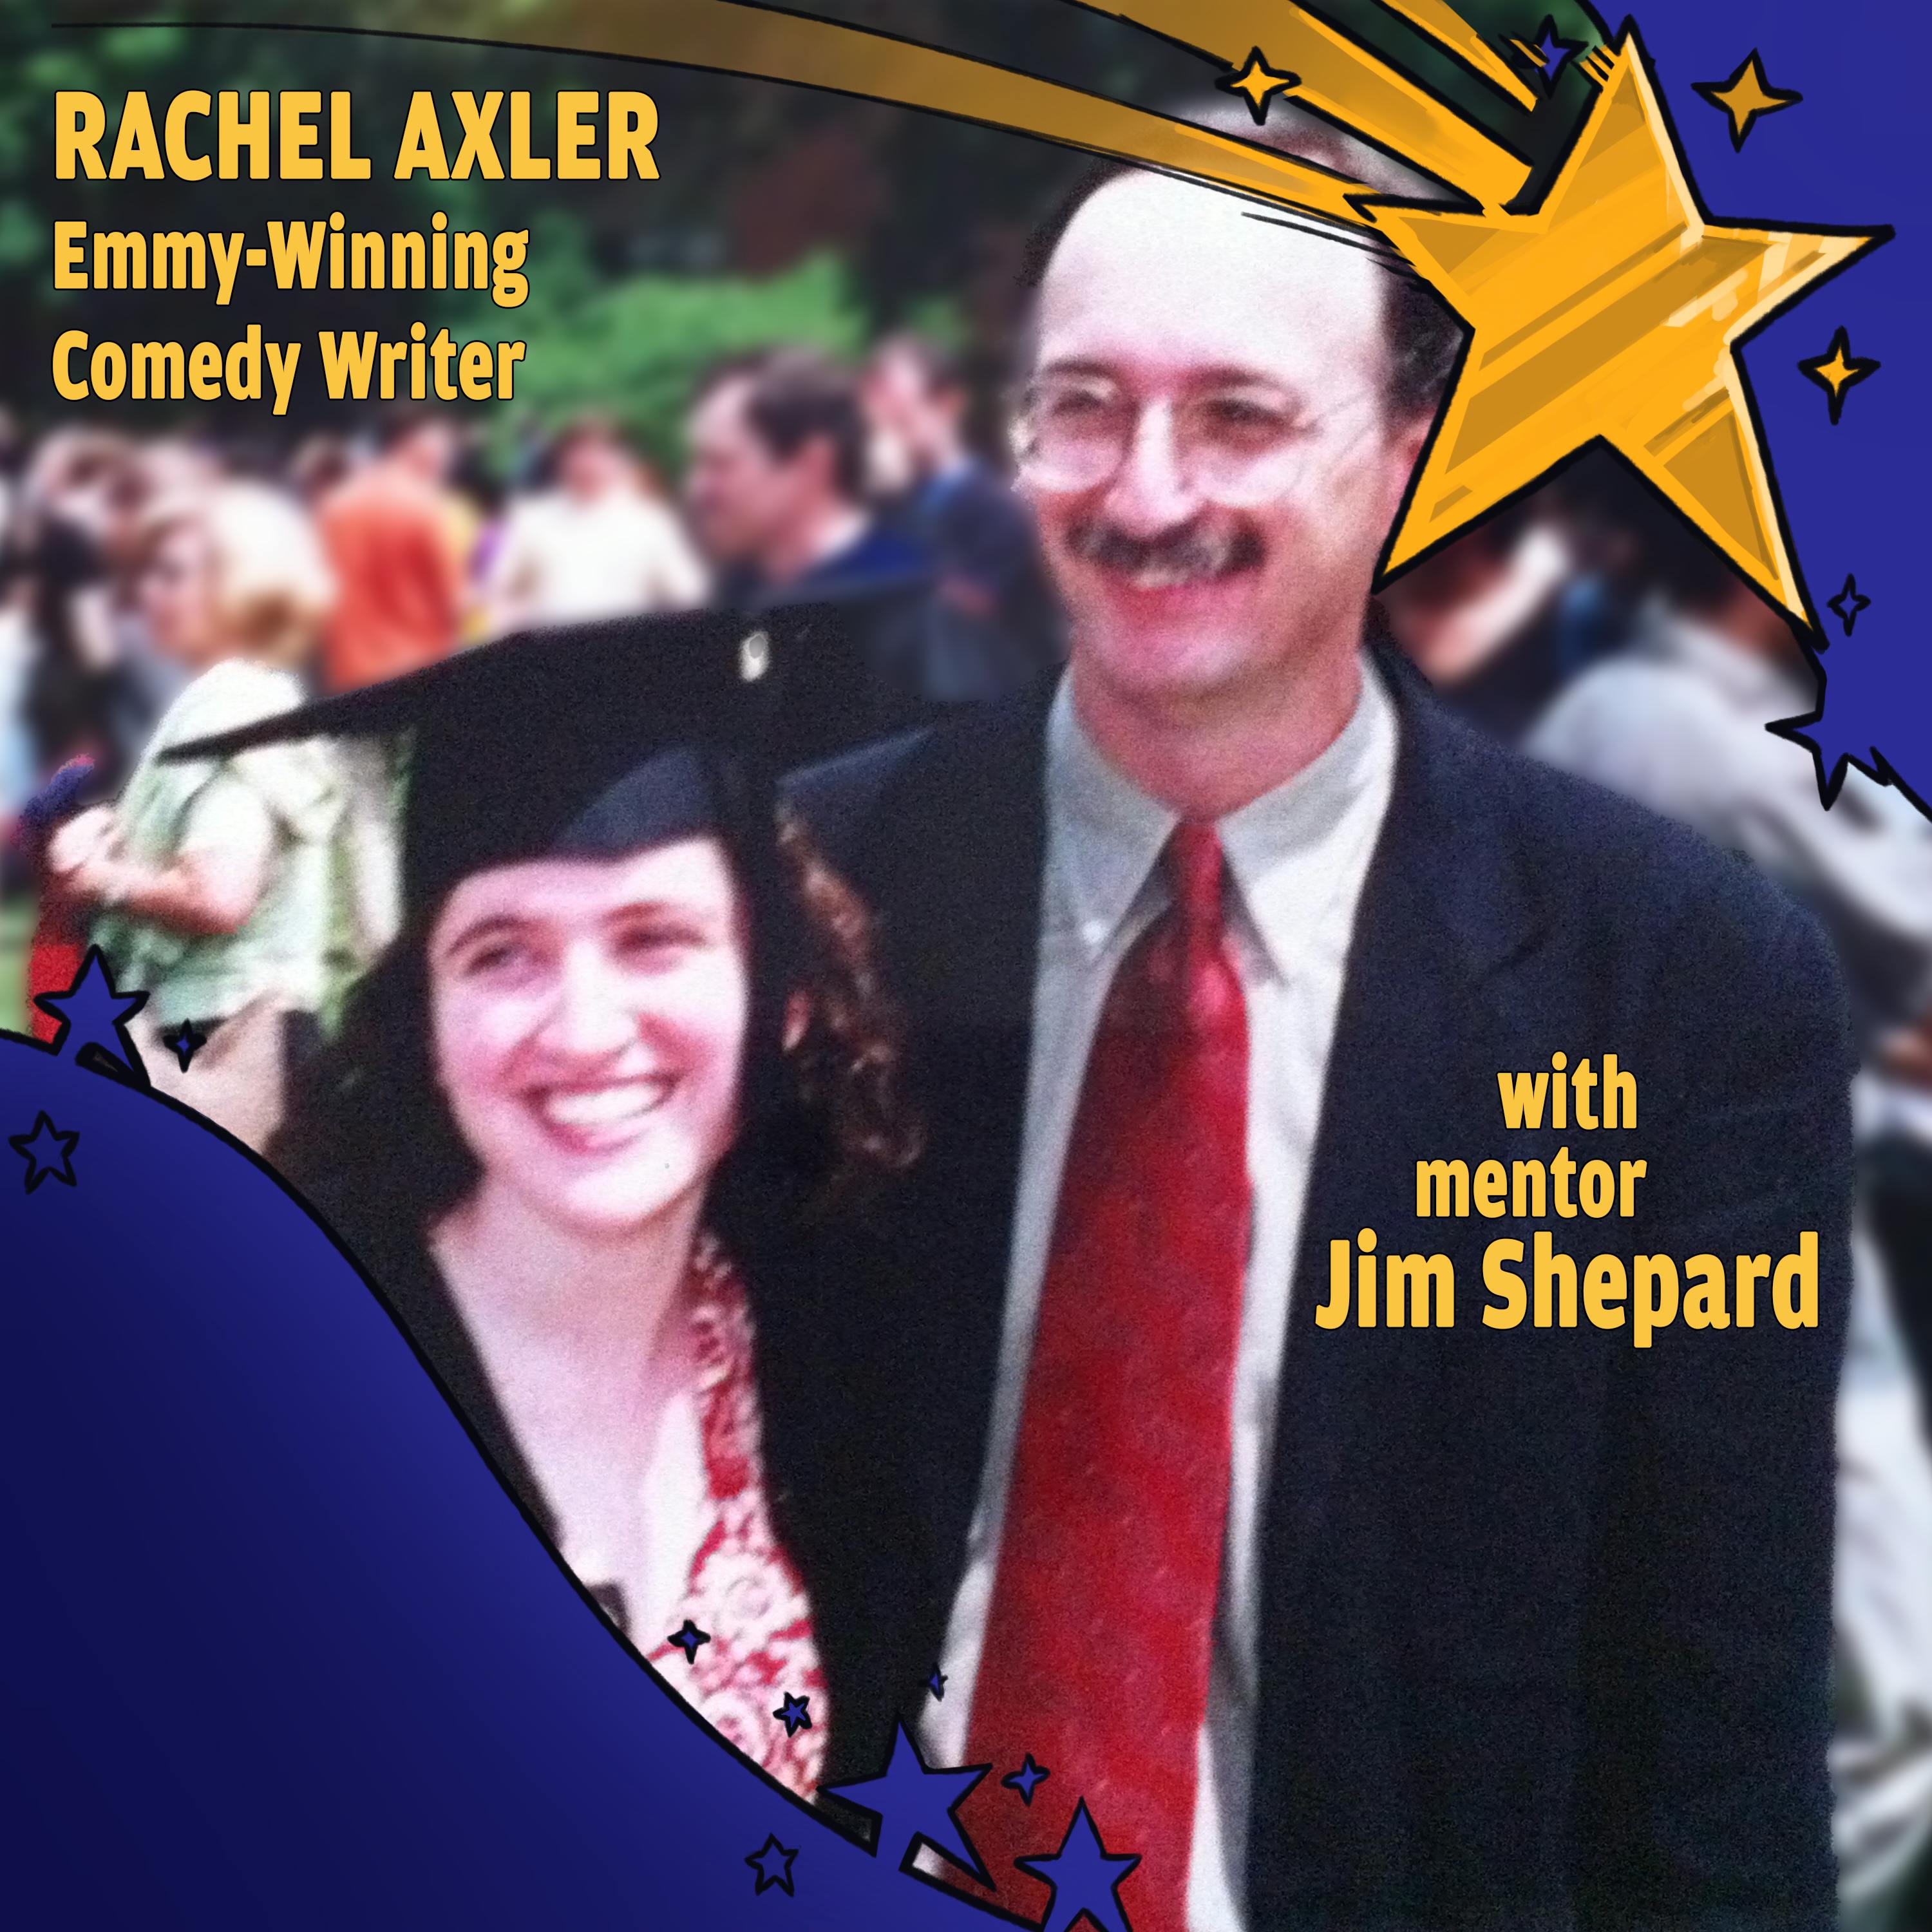 Rachel Axler and Jim Shepard